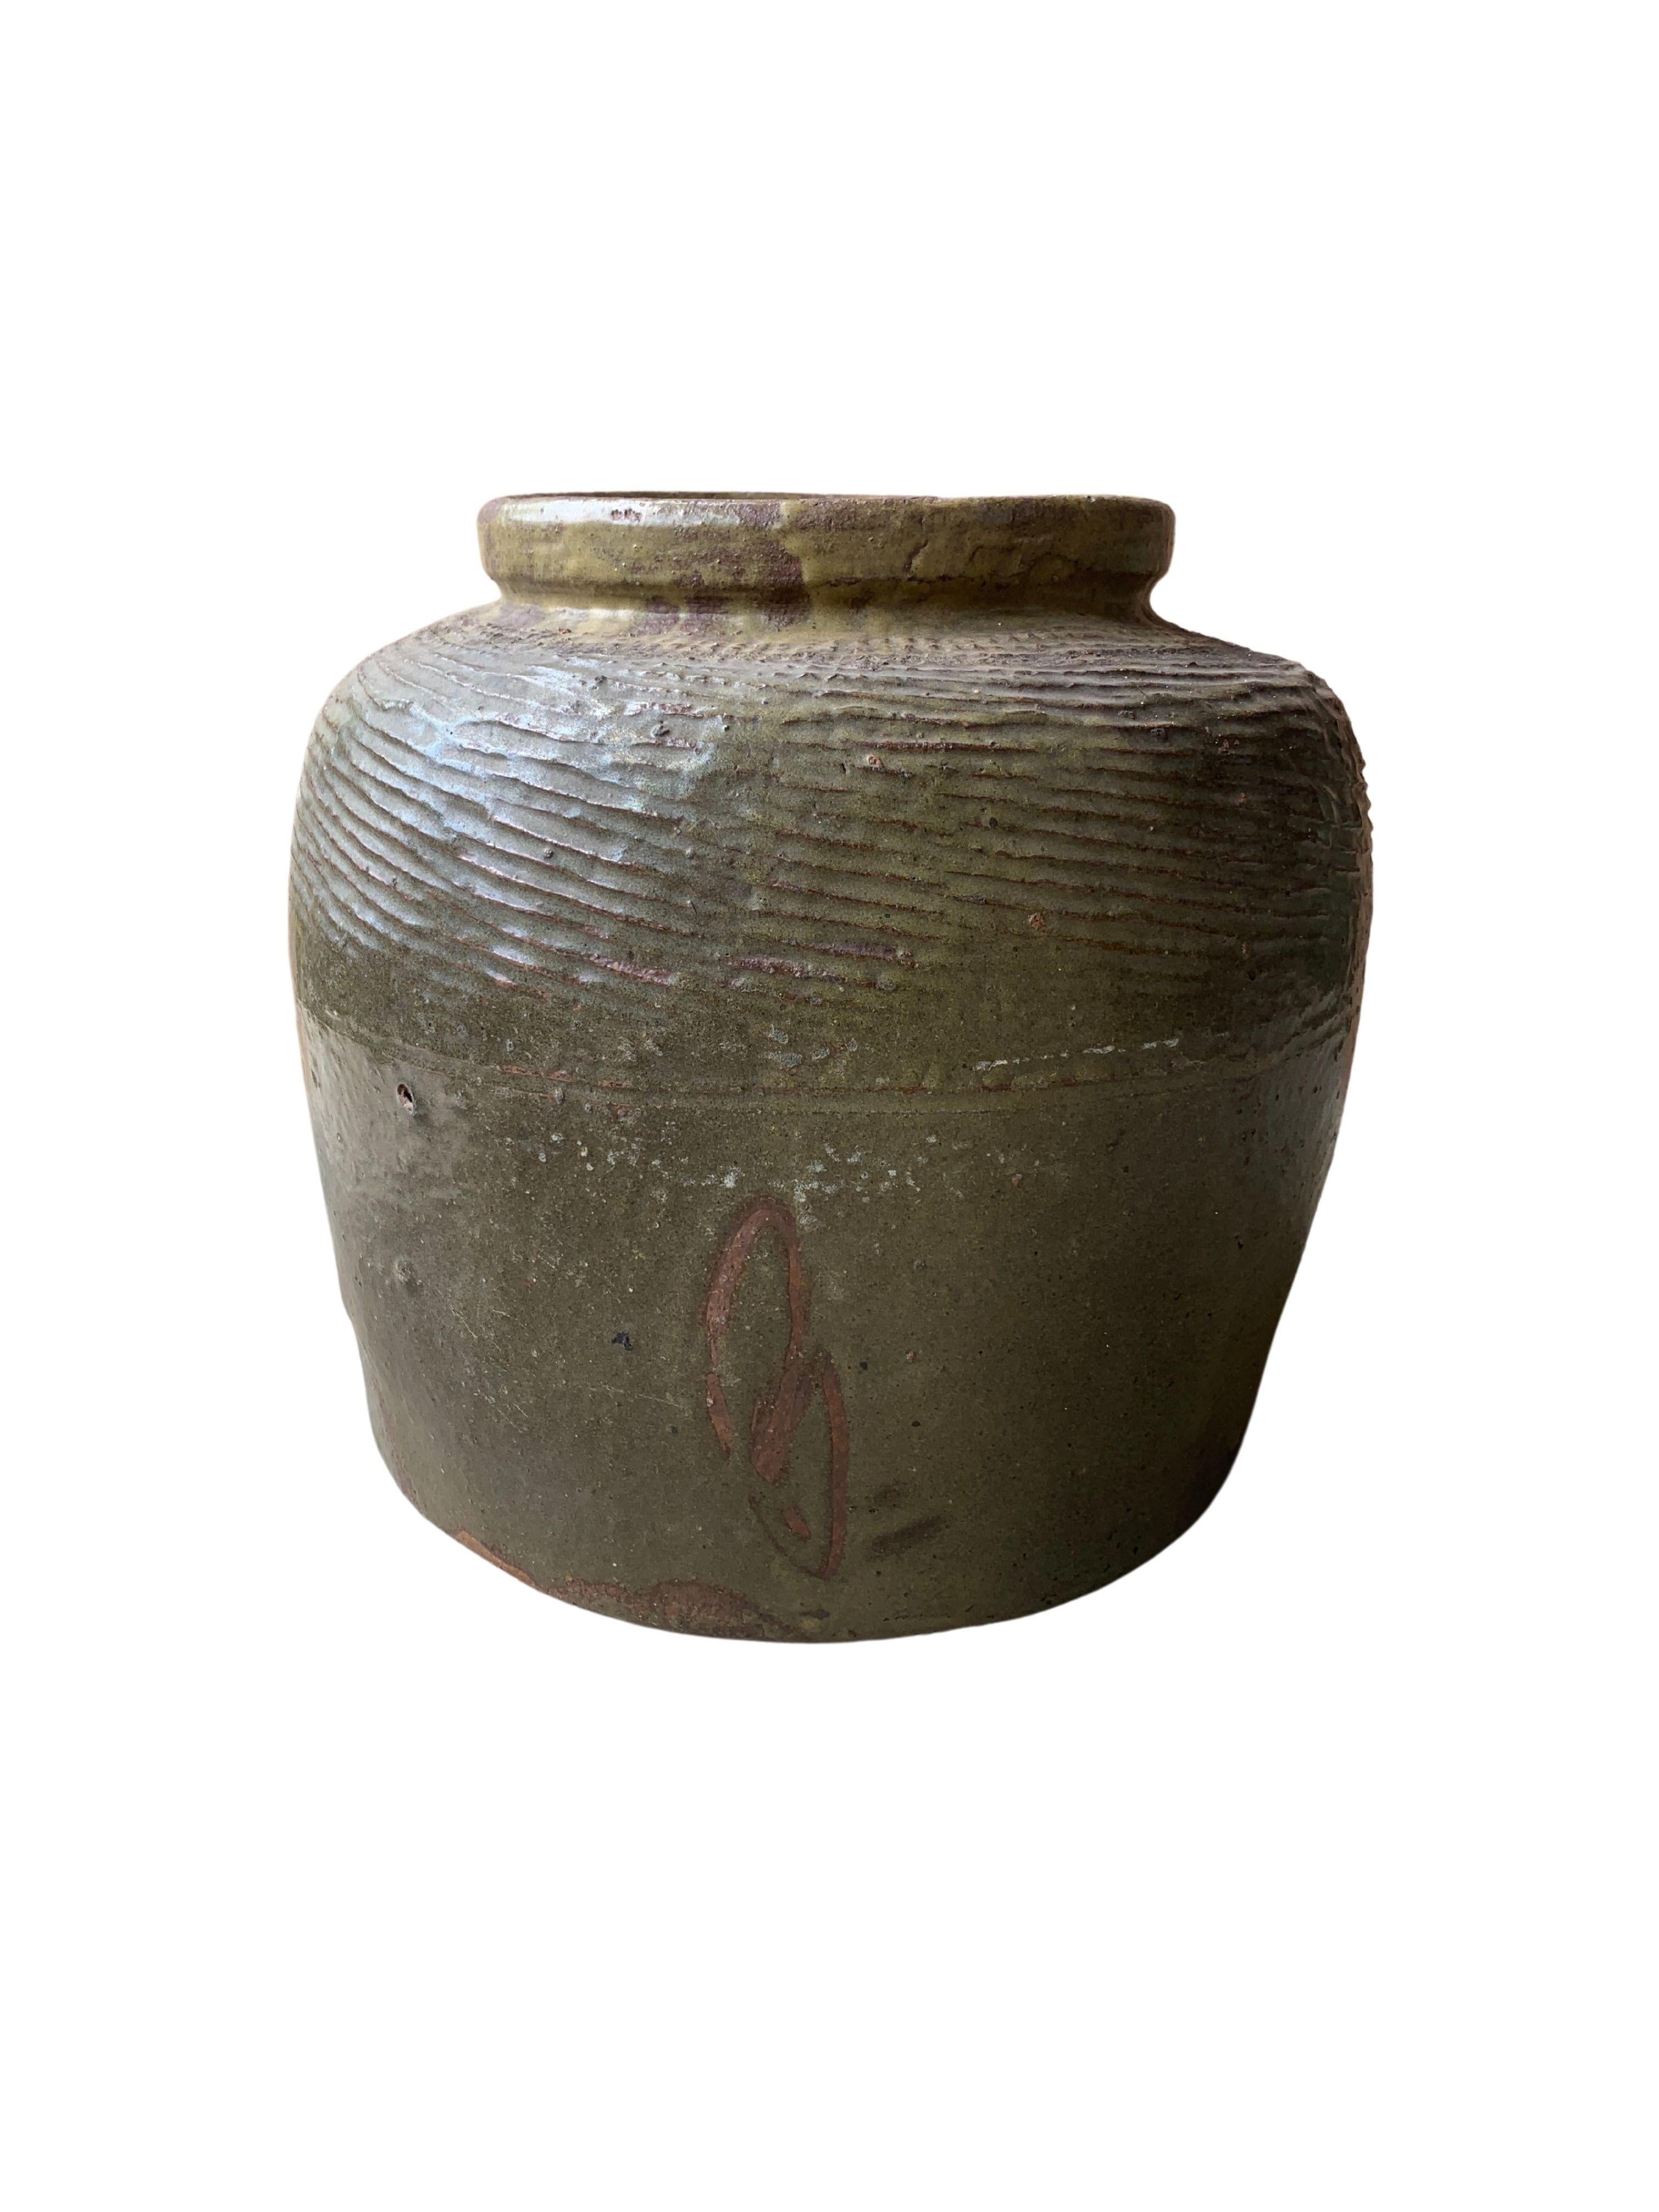 Cette jarre en céramique chinoise émaillée était autrefois utilisée pour mariner les aliments. Il présente une finition vert jade et une surface extérieure qui présente une texture côtelée. Un bel exemple de poterie chinoise, dont les imperfections